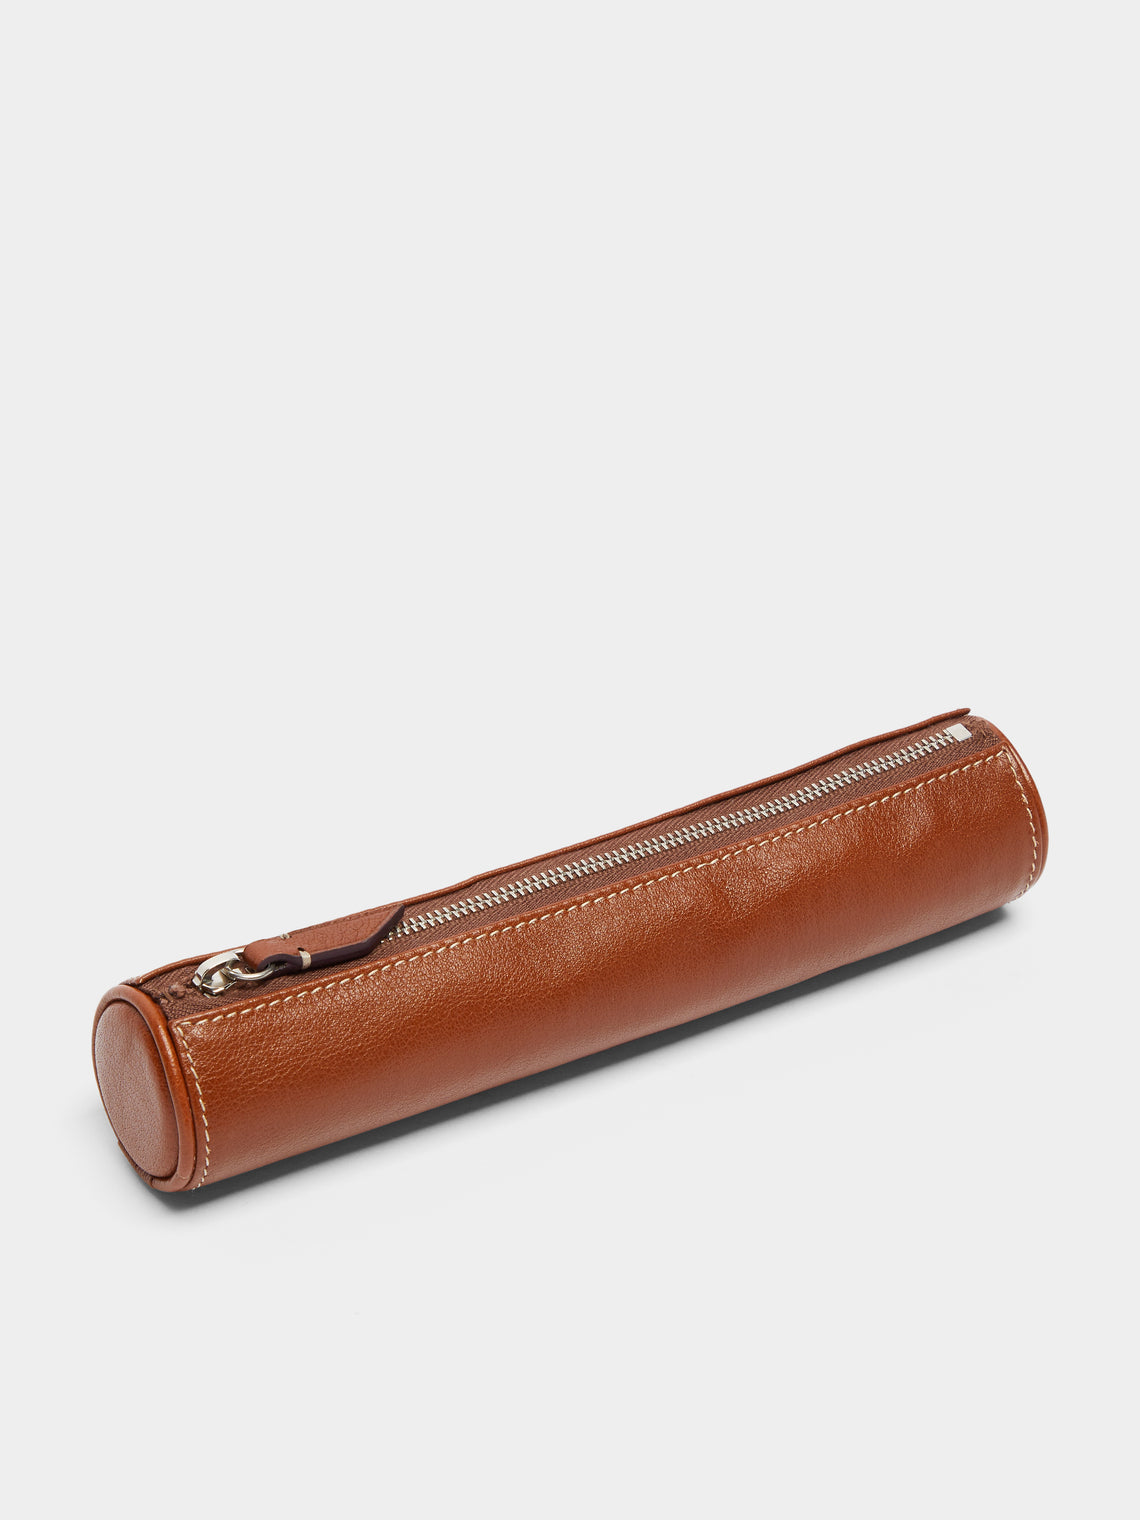 Métier - Leather Pencil Case - Brown - ABASK - 